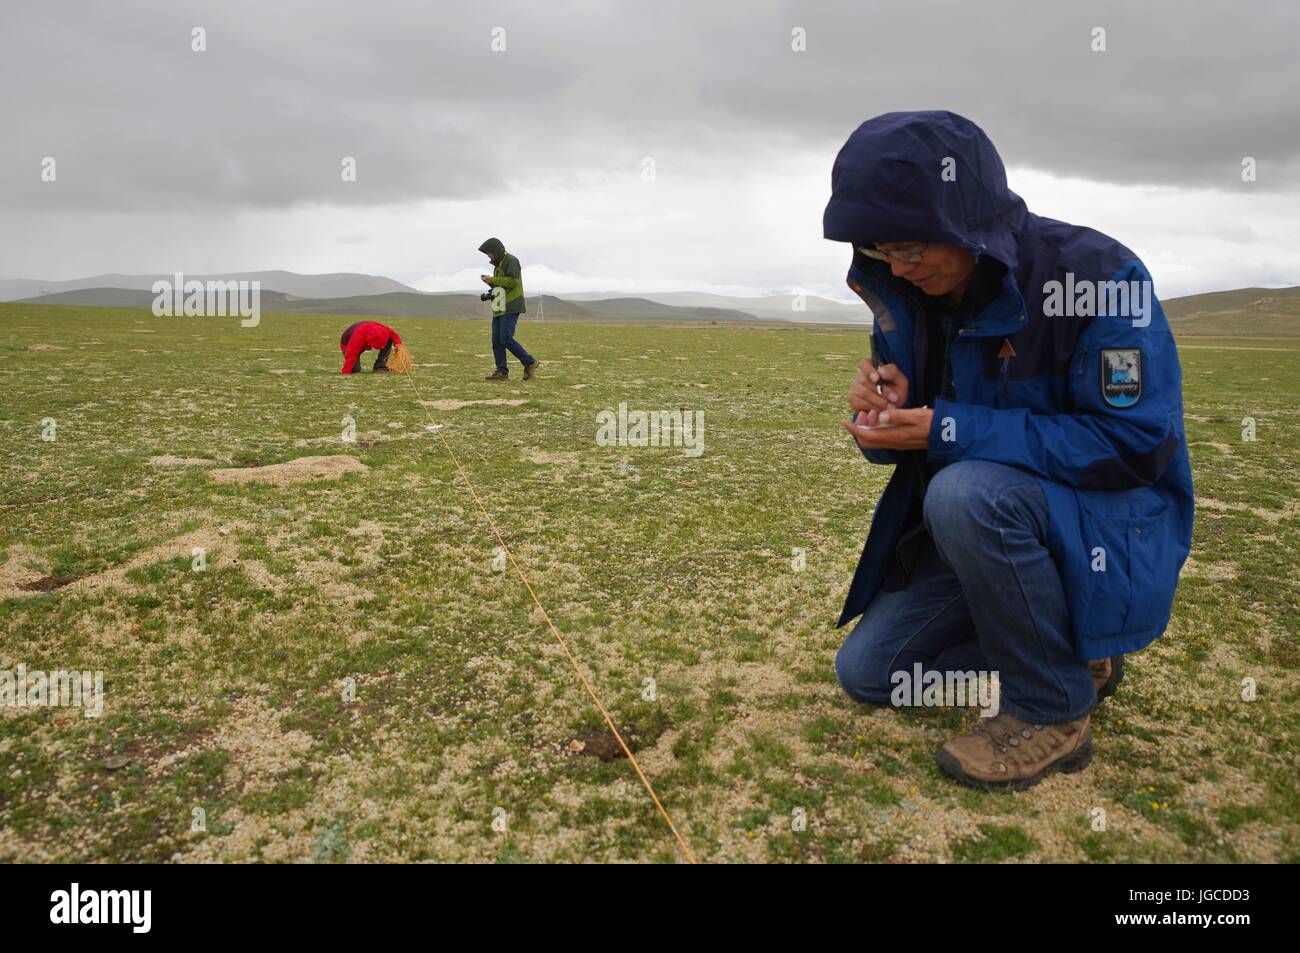 (170705)--NAGQU, 5. Juli 2017 (Xinhua)--Wissenschaftler Jiang Xuelong prüft die Löcher von Ratten und Kaninchen in Nagqu Südwesten Chinas Tibet autonome Region, 3. Juli 2017. China begann seine zweite wissenschaftliche Expedition nach der Qinghai-Tibet-Plateau um Veränderungen im Klima, Biodiversität und Umwelt in den letzten Jahrzehnten zu studieren.  (Xinhua/Liu Dongjun) (lb) Stockfoto